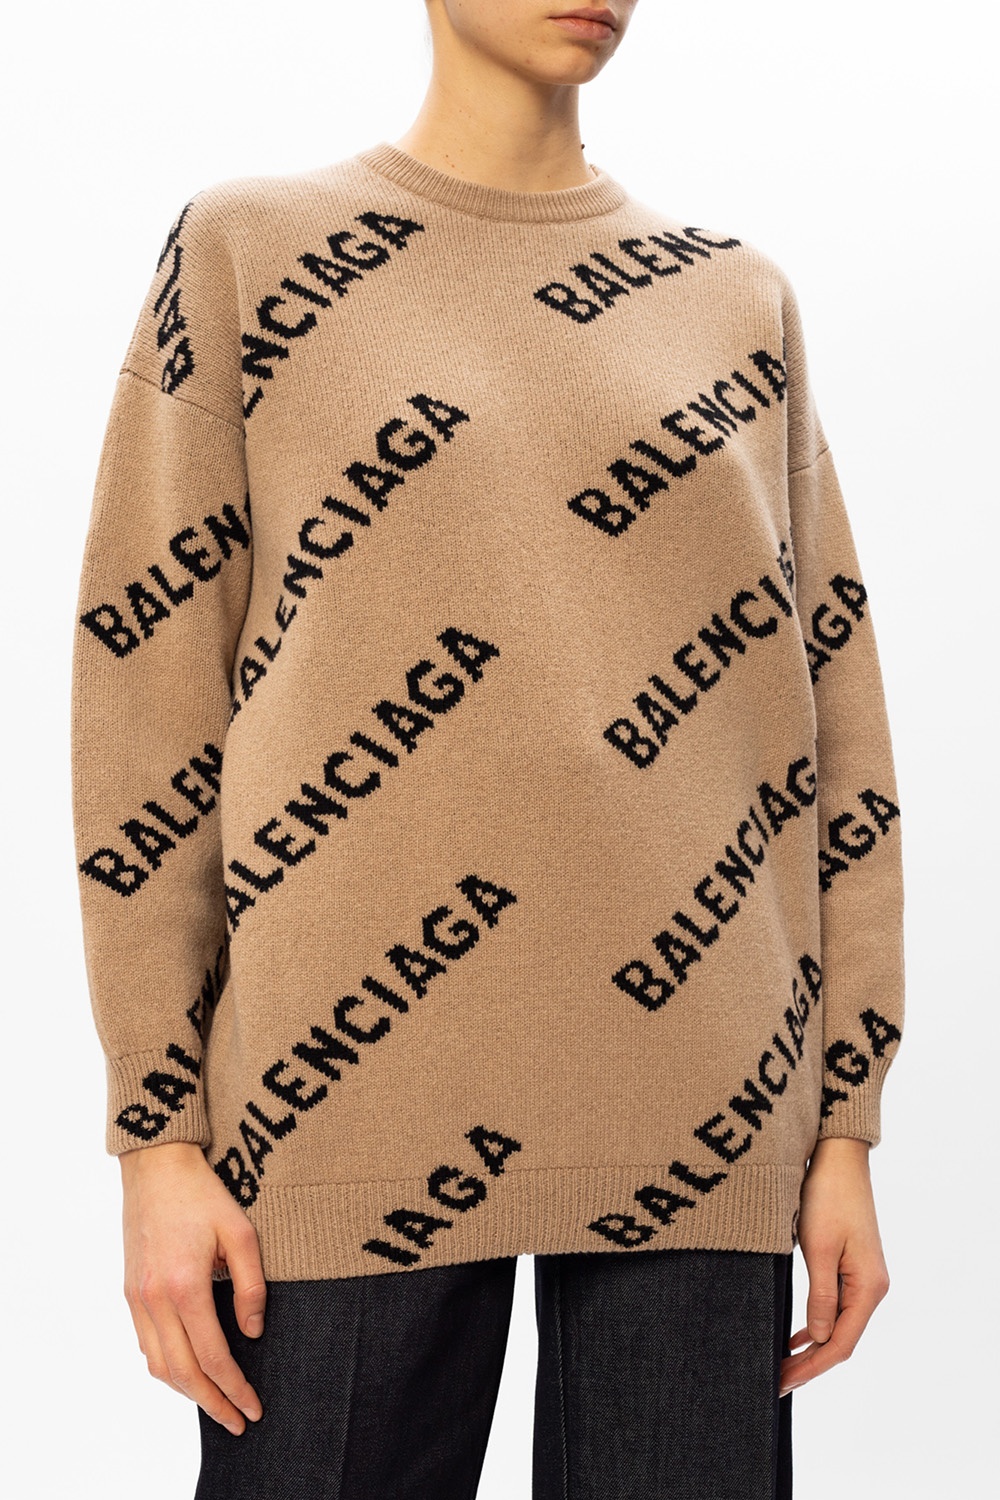 Balenciaga AllOver Logo Sweater  Harrods BA